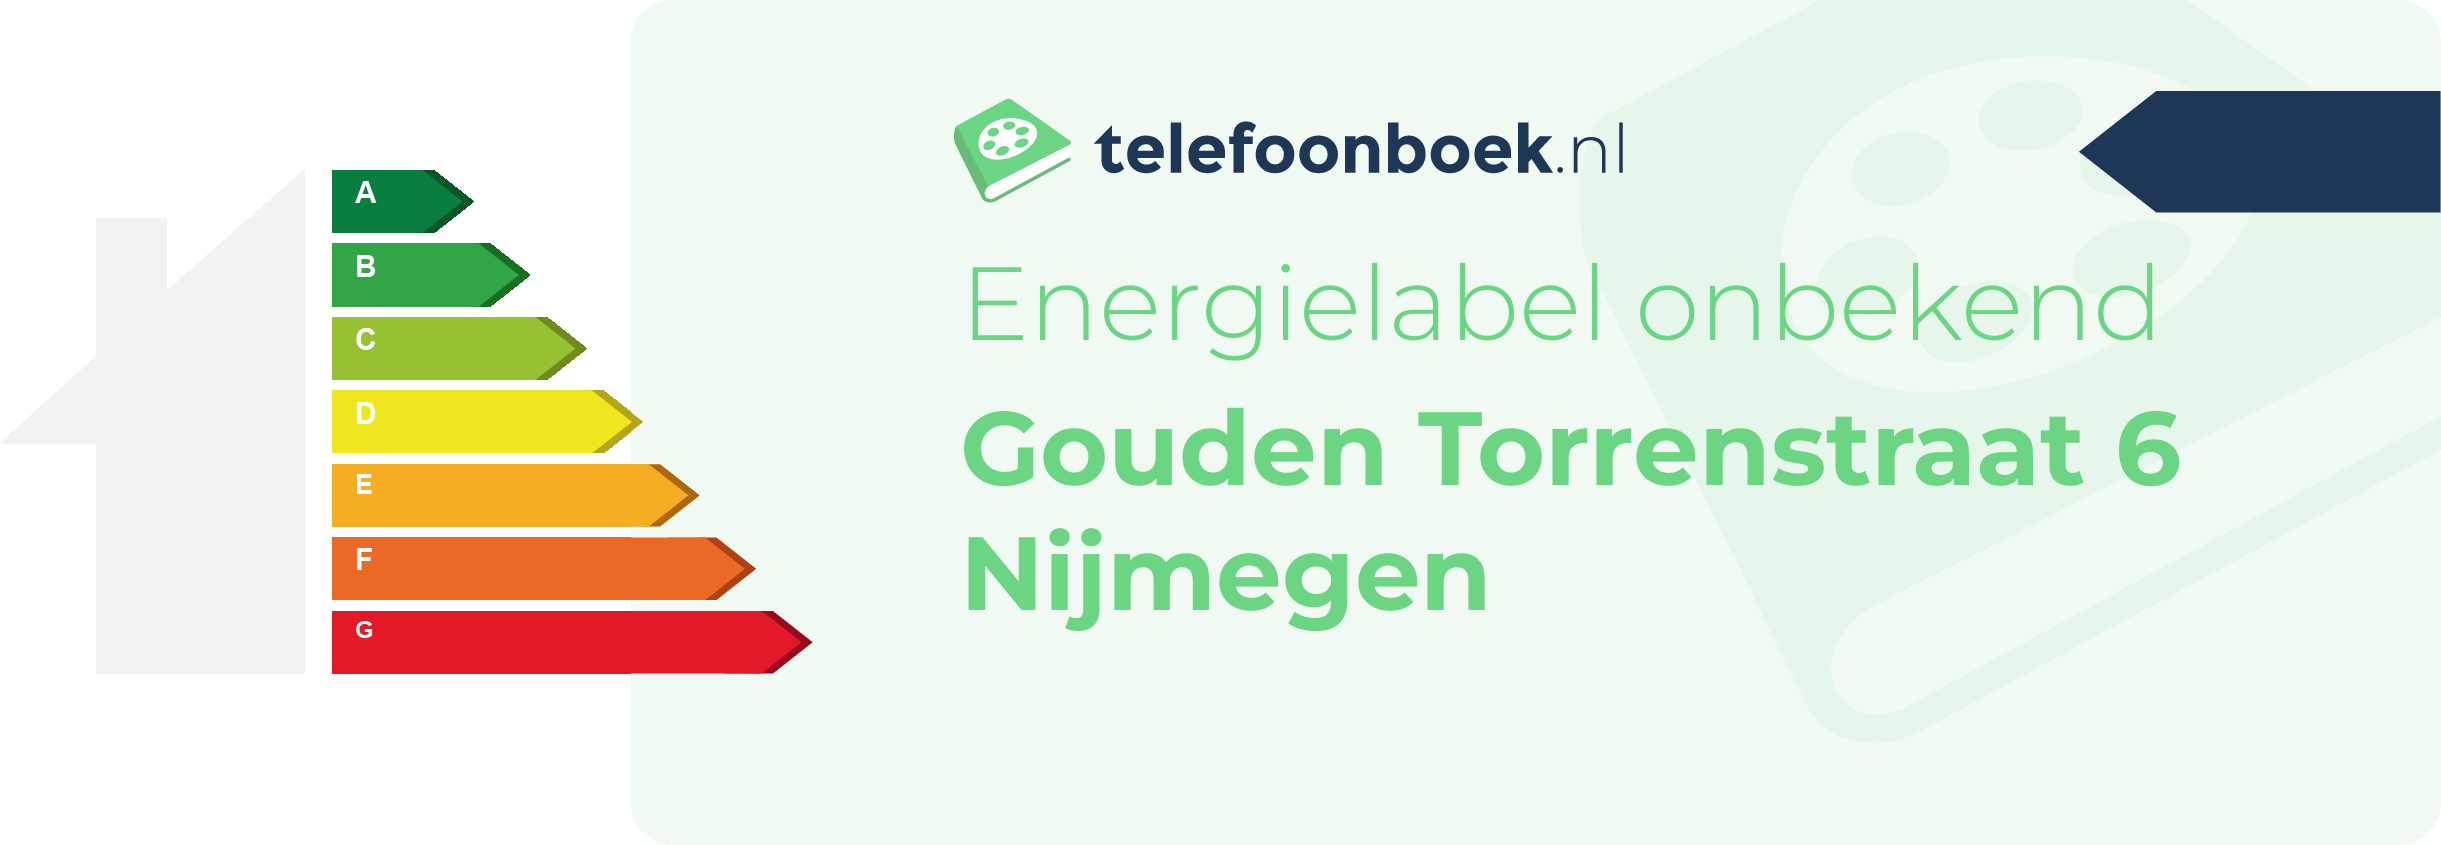 Energielabel Gouden Torrenstraat 6 Nijmegen